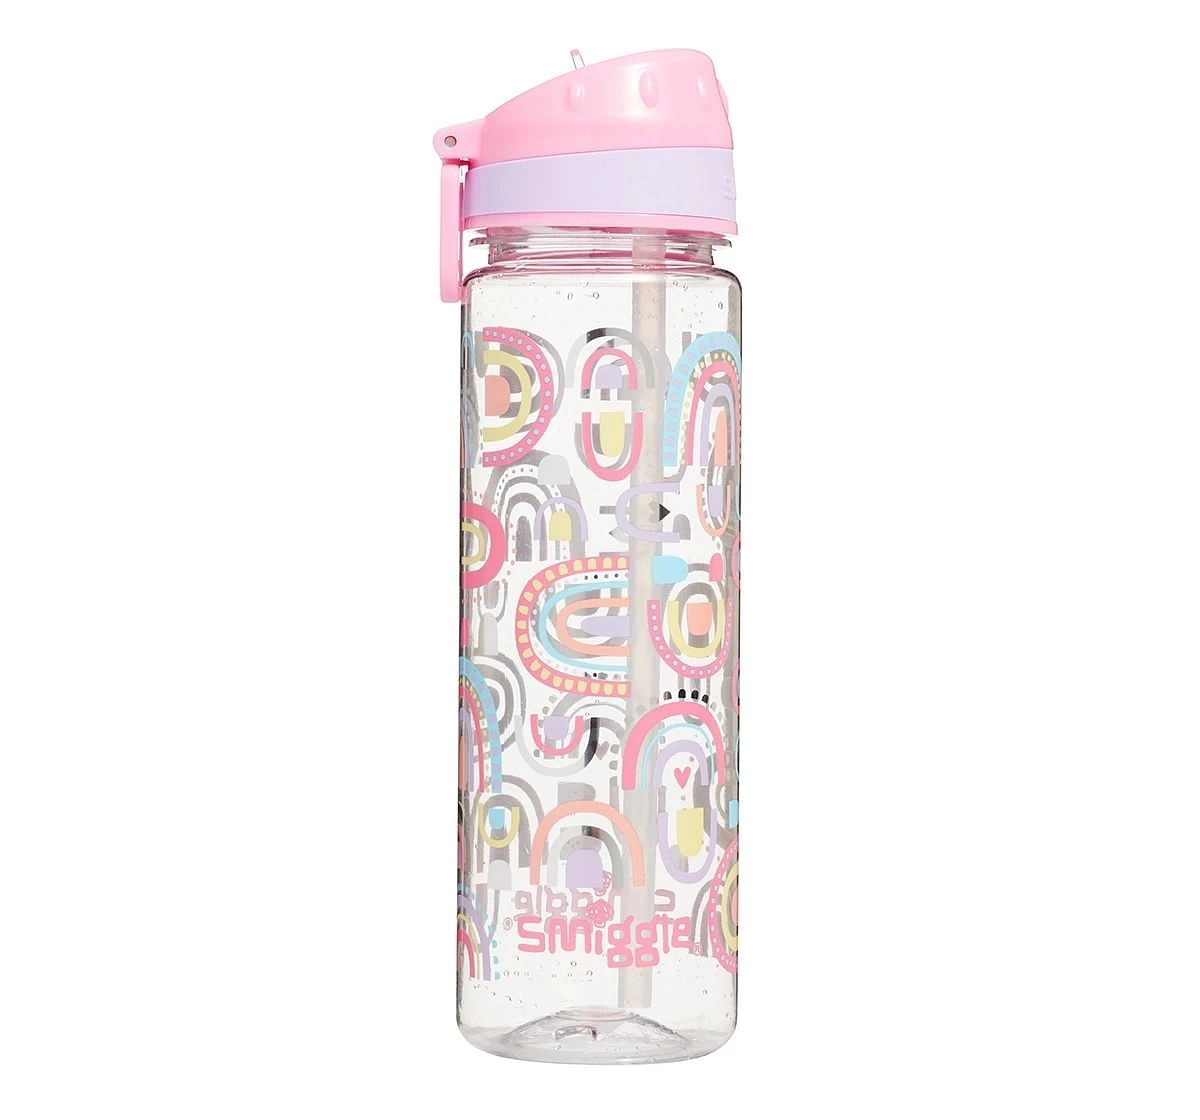 Smiggle Bright Side Drink Bottle 650ml School Wear for Kids 3Y+, Pink